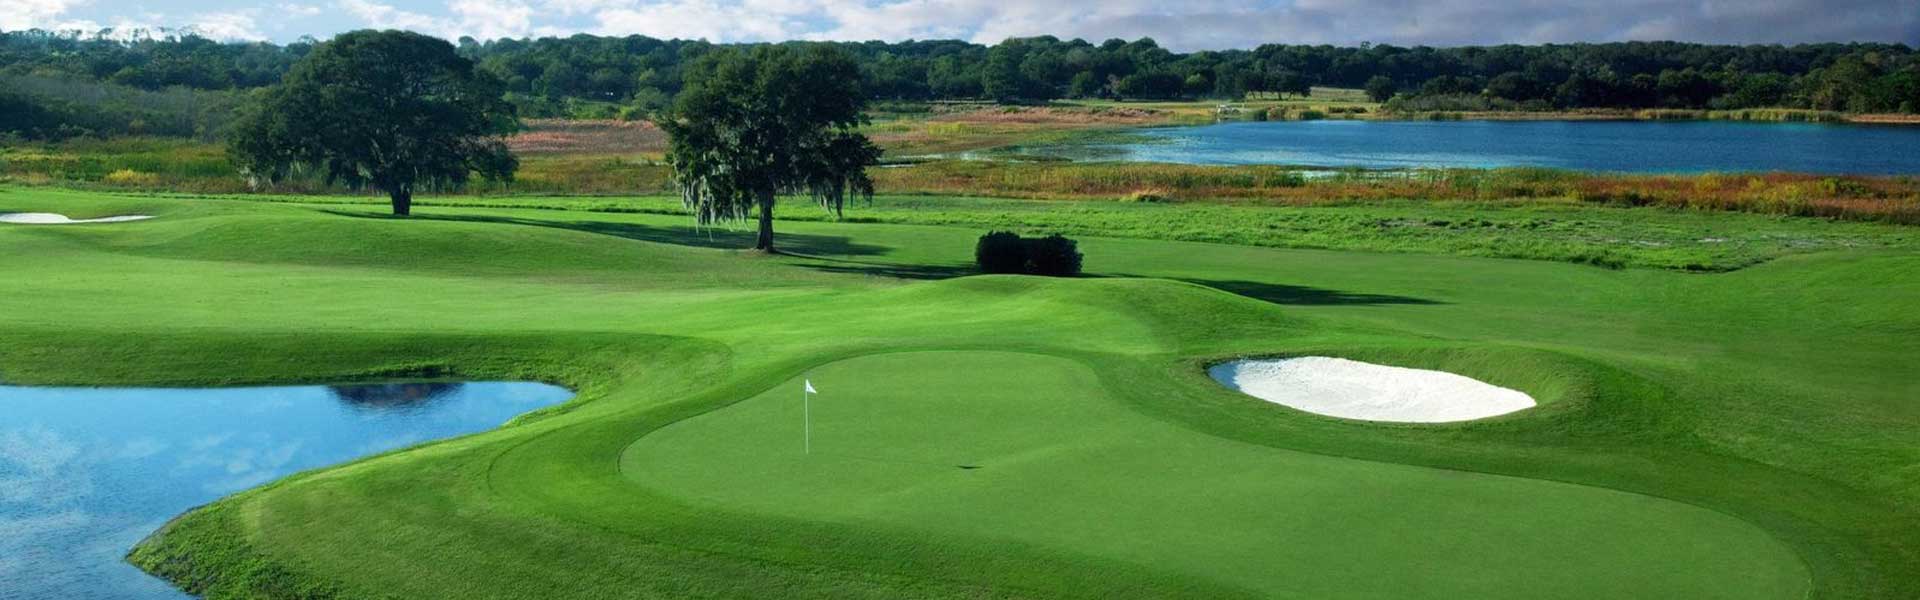 MetroWest Golf Club Orlando